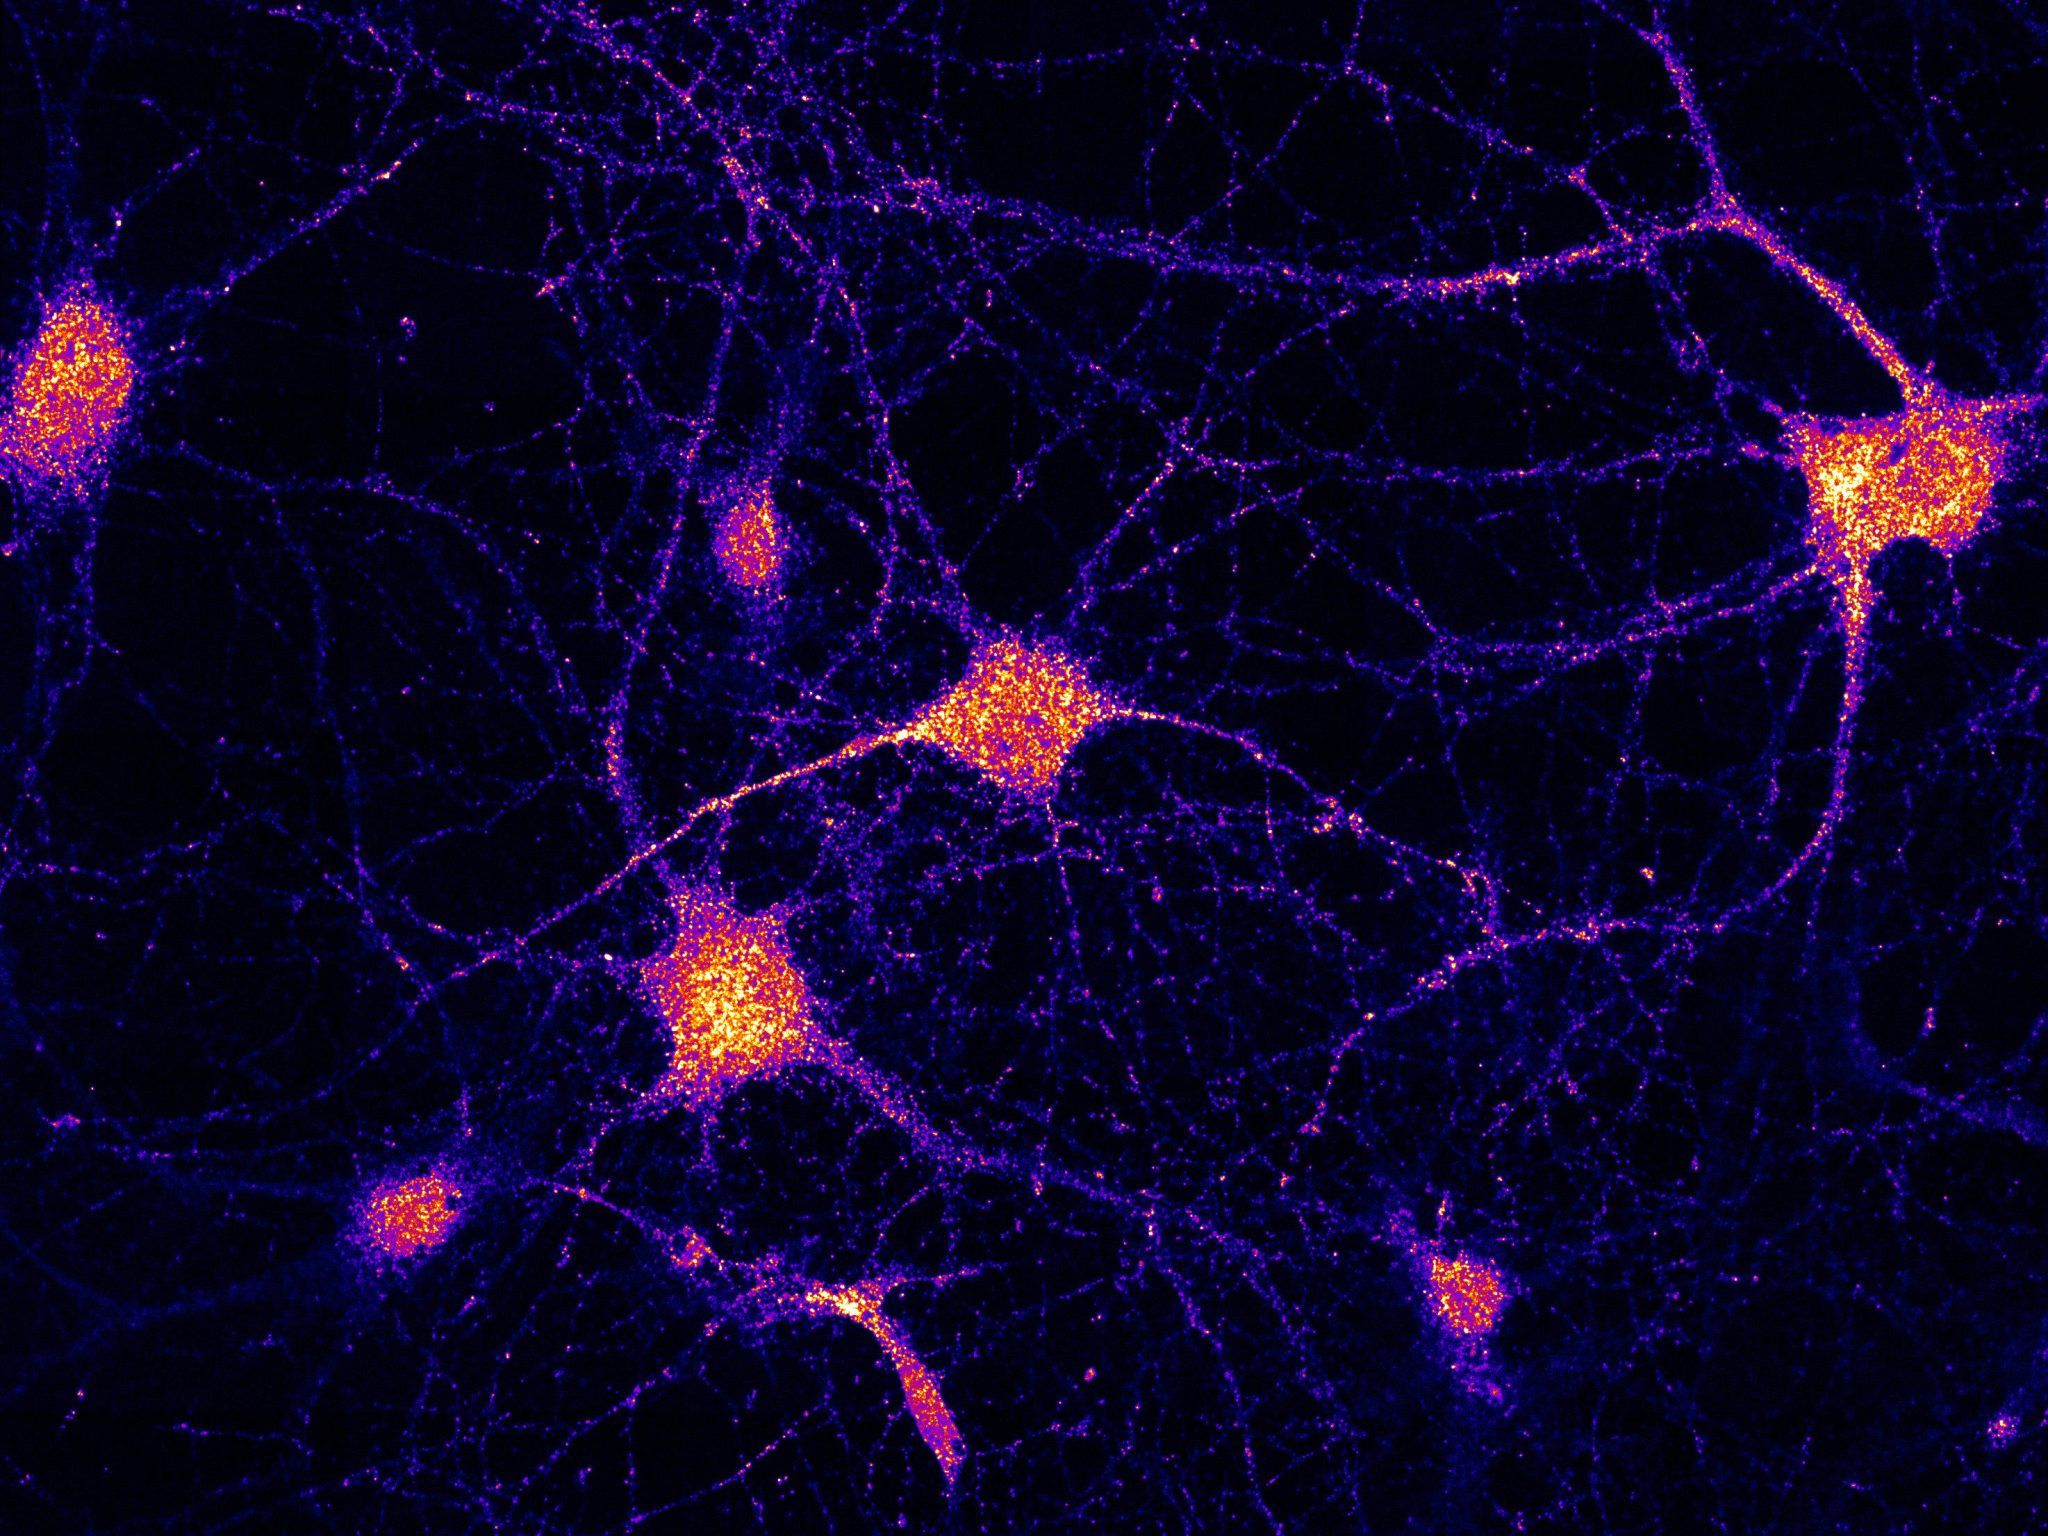 El eslabón perdido explica la entrega de ARNm en las células cerebrales